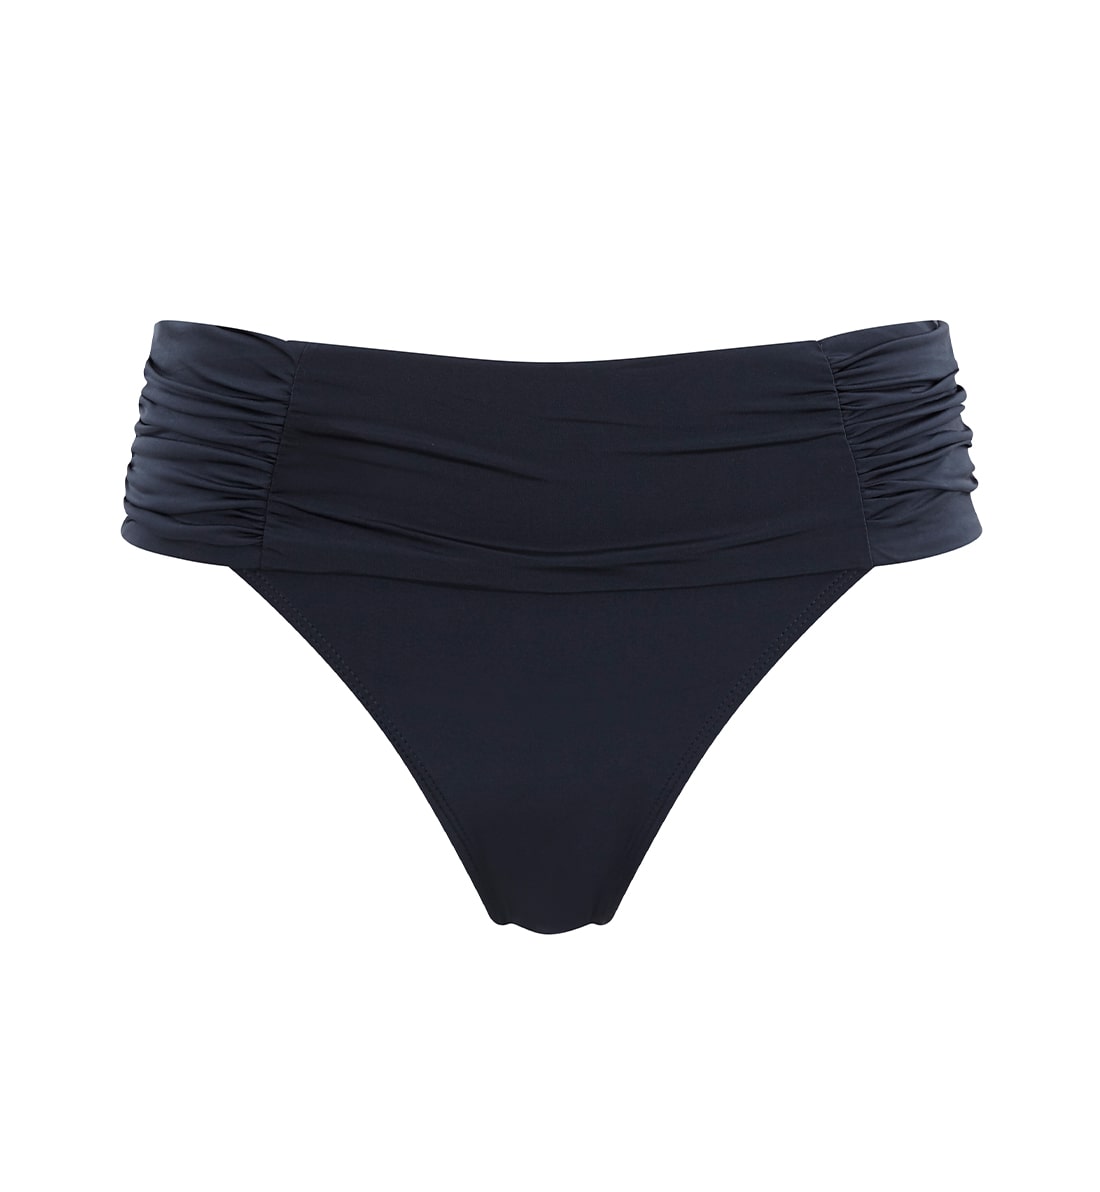 Panache Marina Fold Pant Swim Bottom (SW0837),XXXL,Graphite - Graphite,XXXL